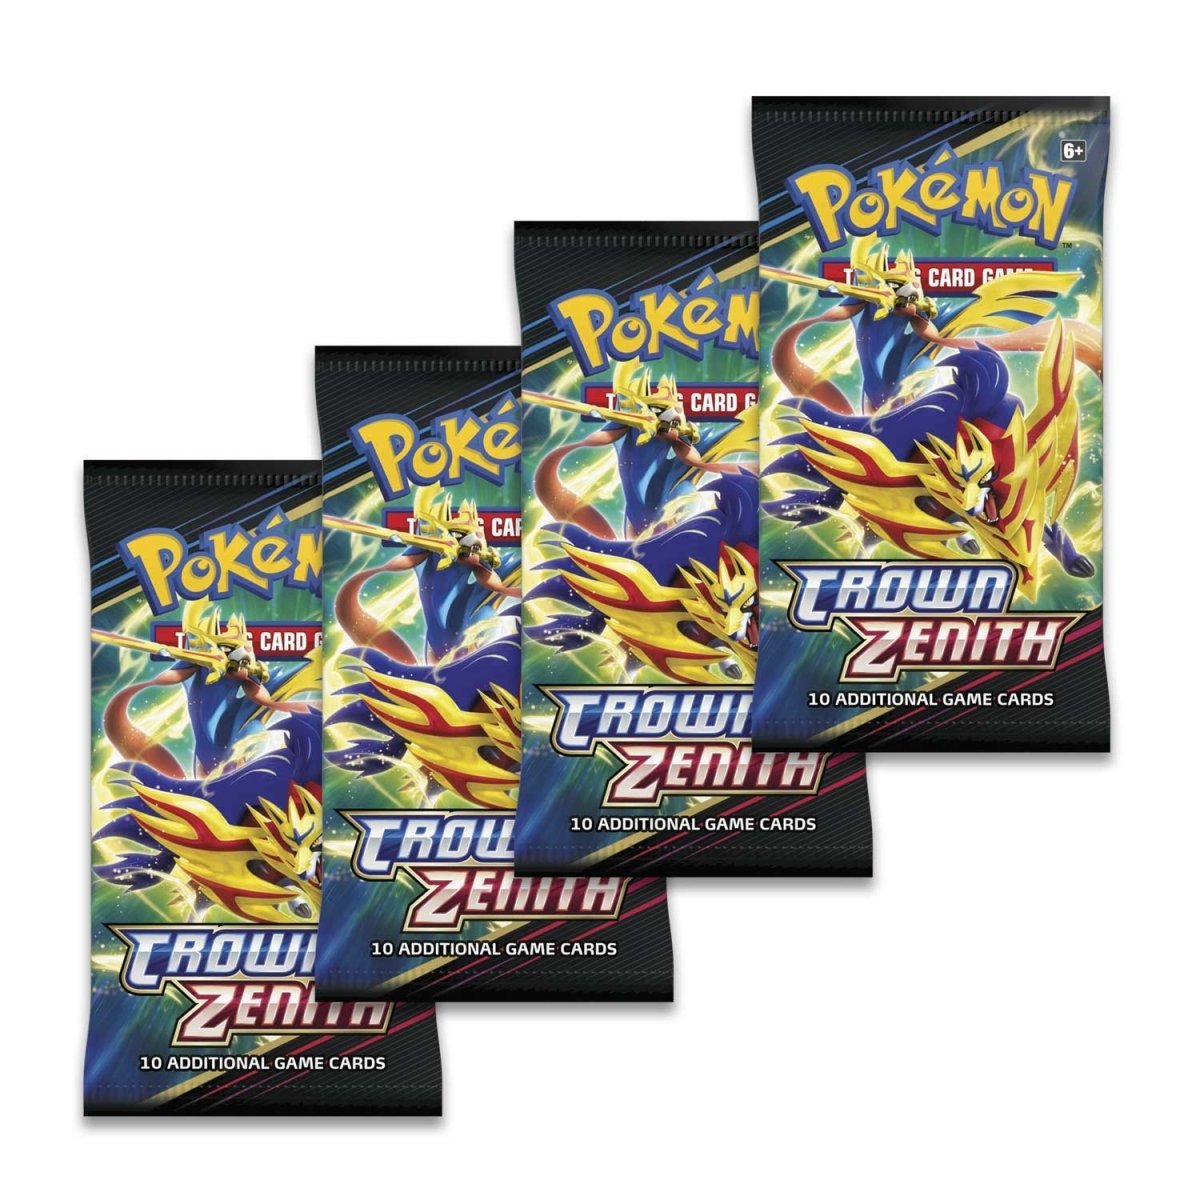 Pokémon TCG: Crown Zenith Regidrago V Collection Box - PokeRvmCollection Box